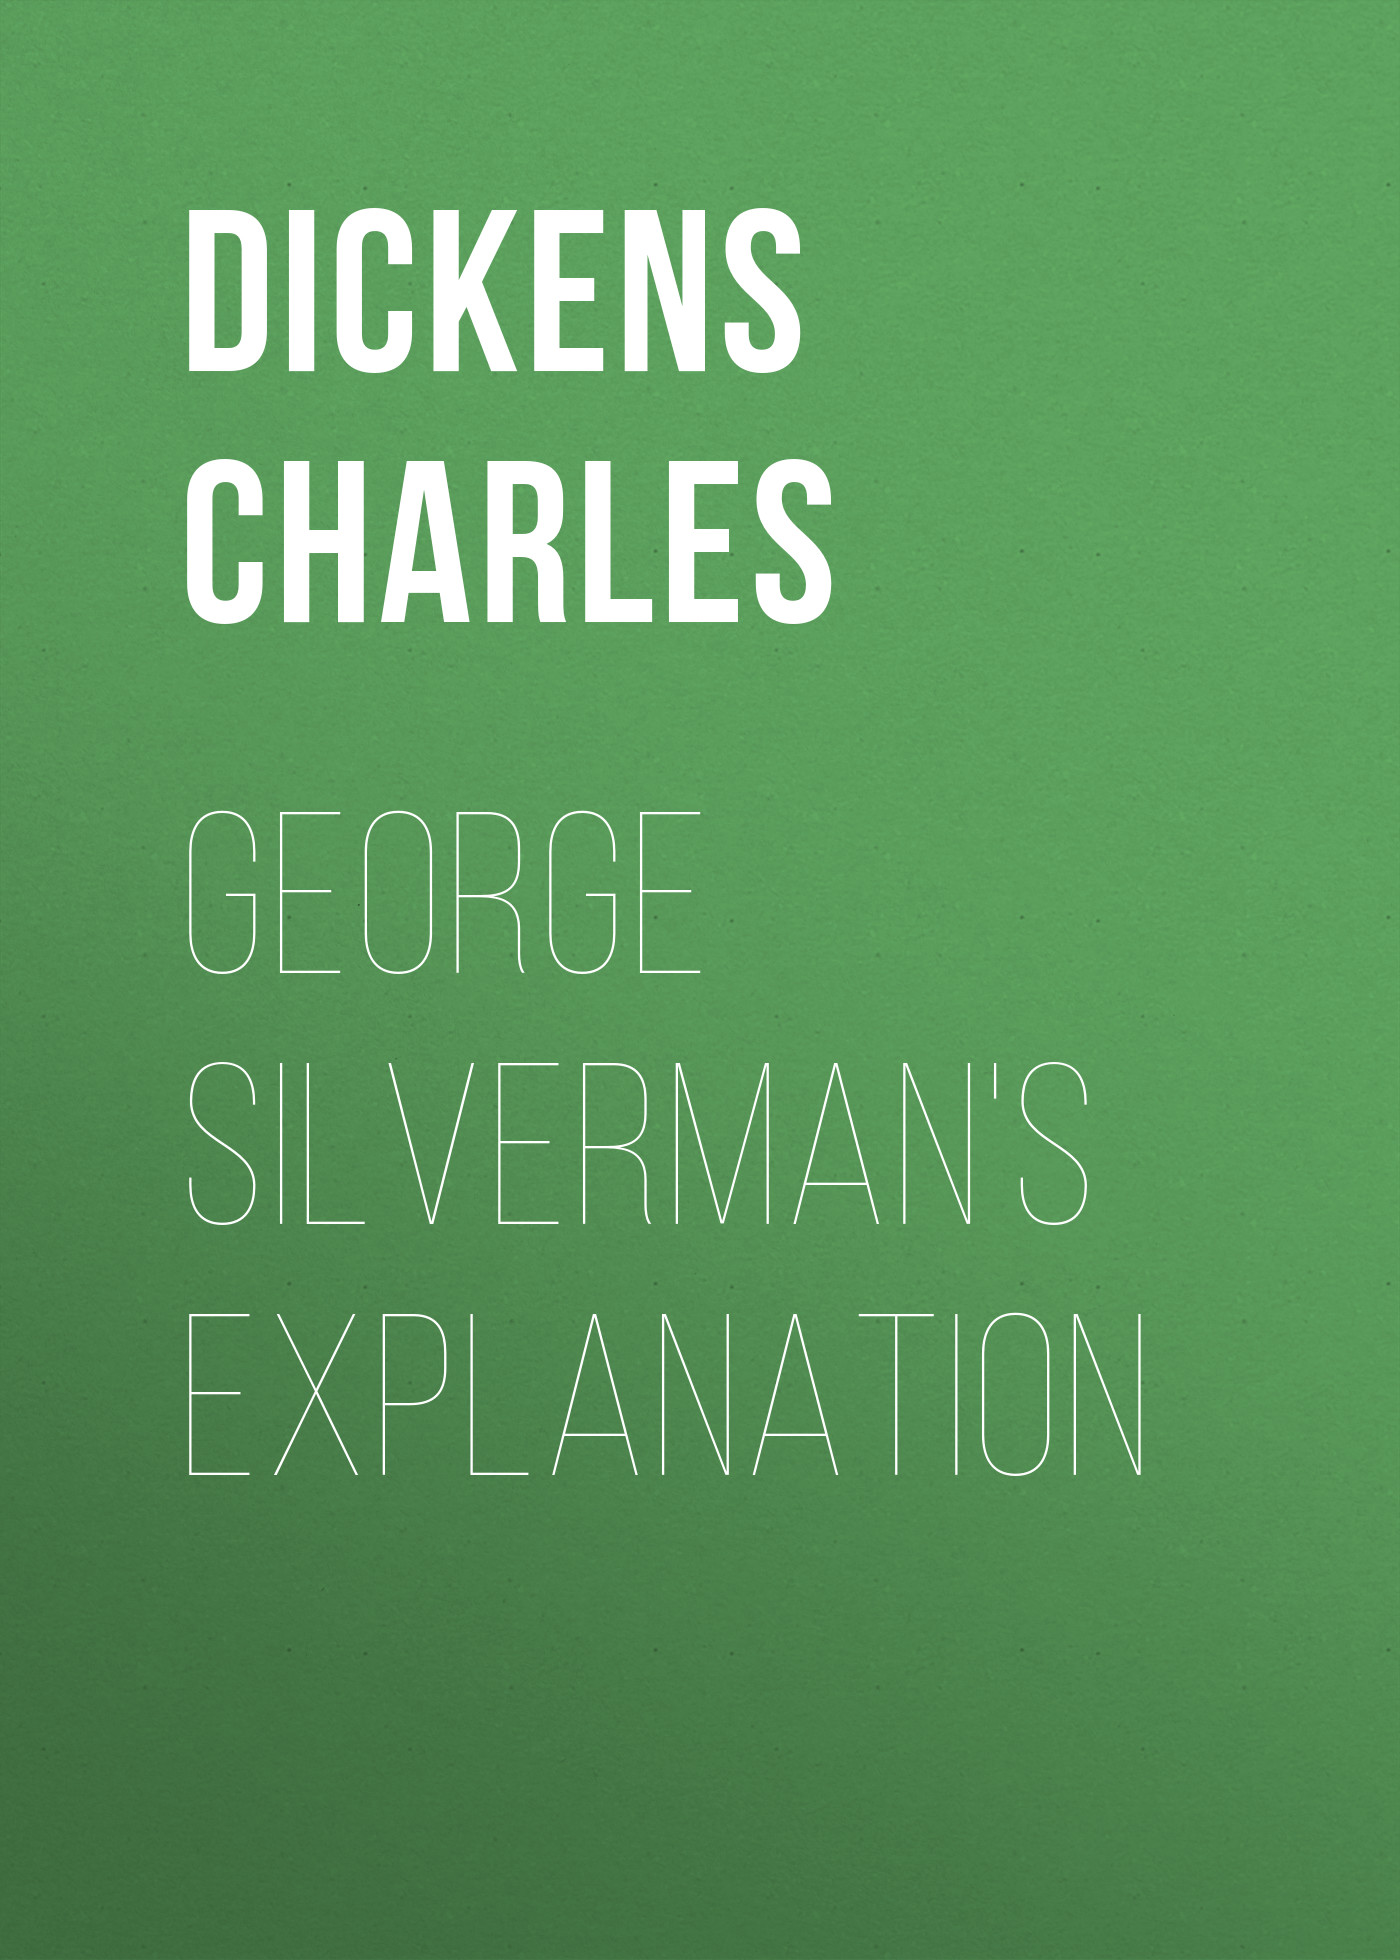 Книга George Silverman's Explanation из серии , созданная Чарльз Диккенс, может относится к жанру Зарубежная старинная литература, Зарубежная классика. Стоимость электронной книги George Silverman's Explanation с идентификатором 25092236 составляет 0 руб.